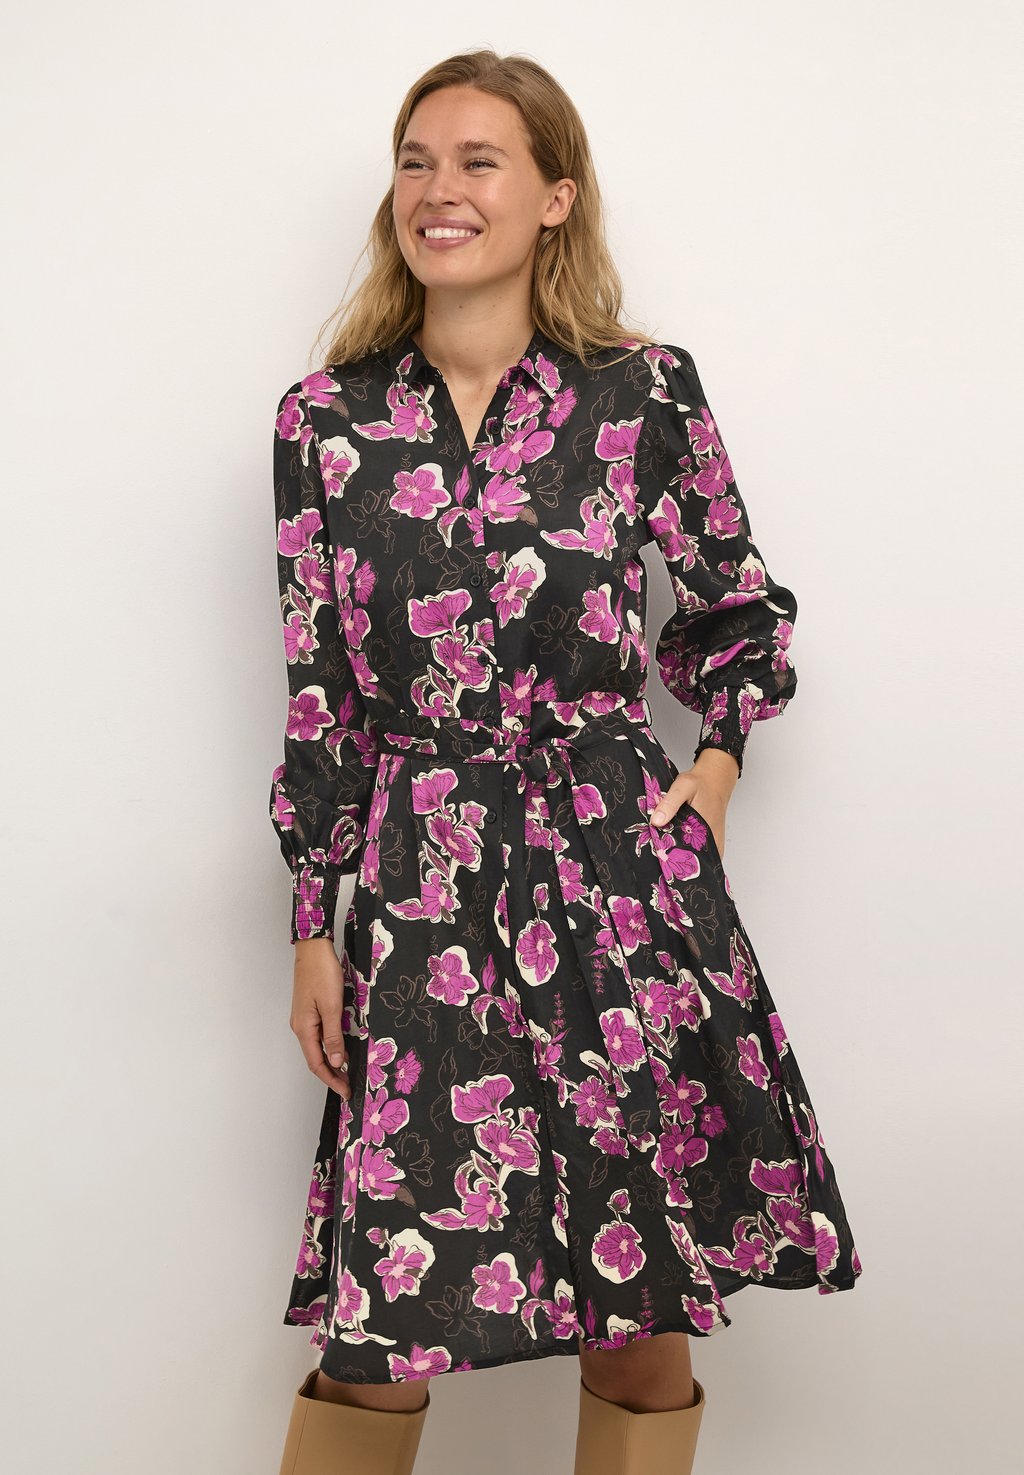 цена Платье-рубашка POLLIE OLLIE Kaffe, цветочный принт цвета фуксии красный